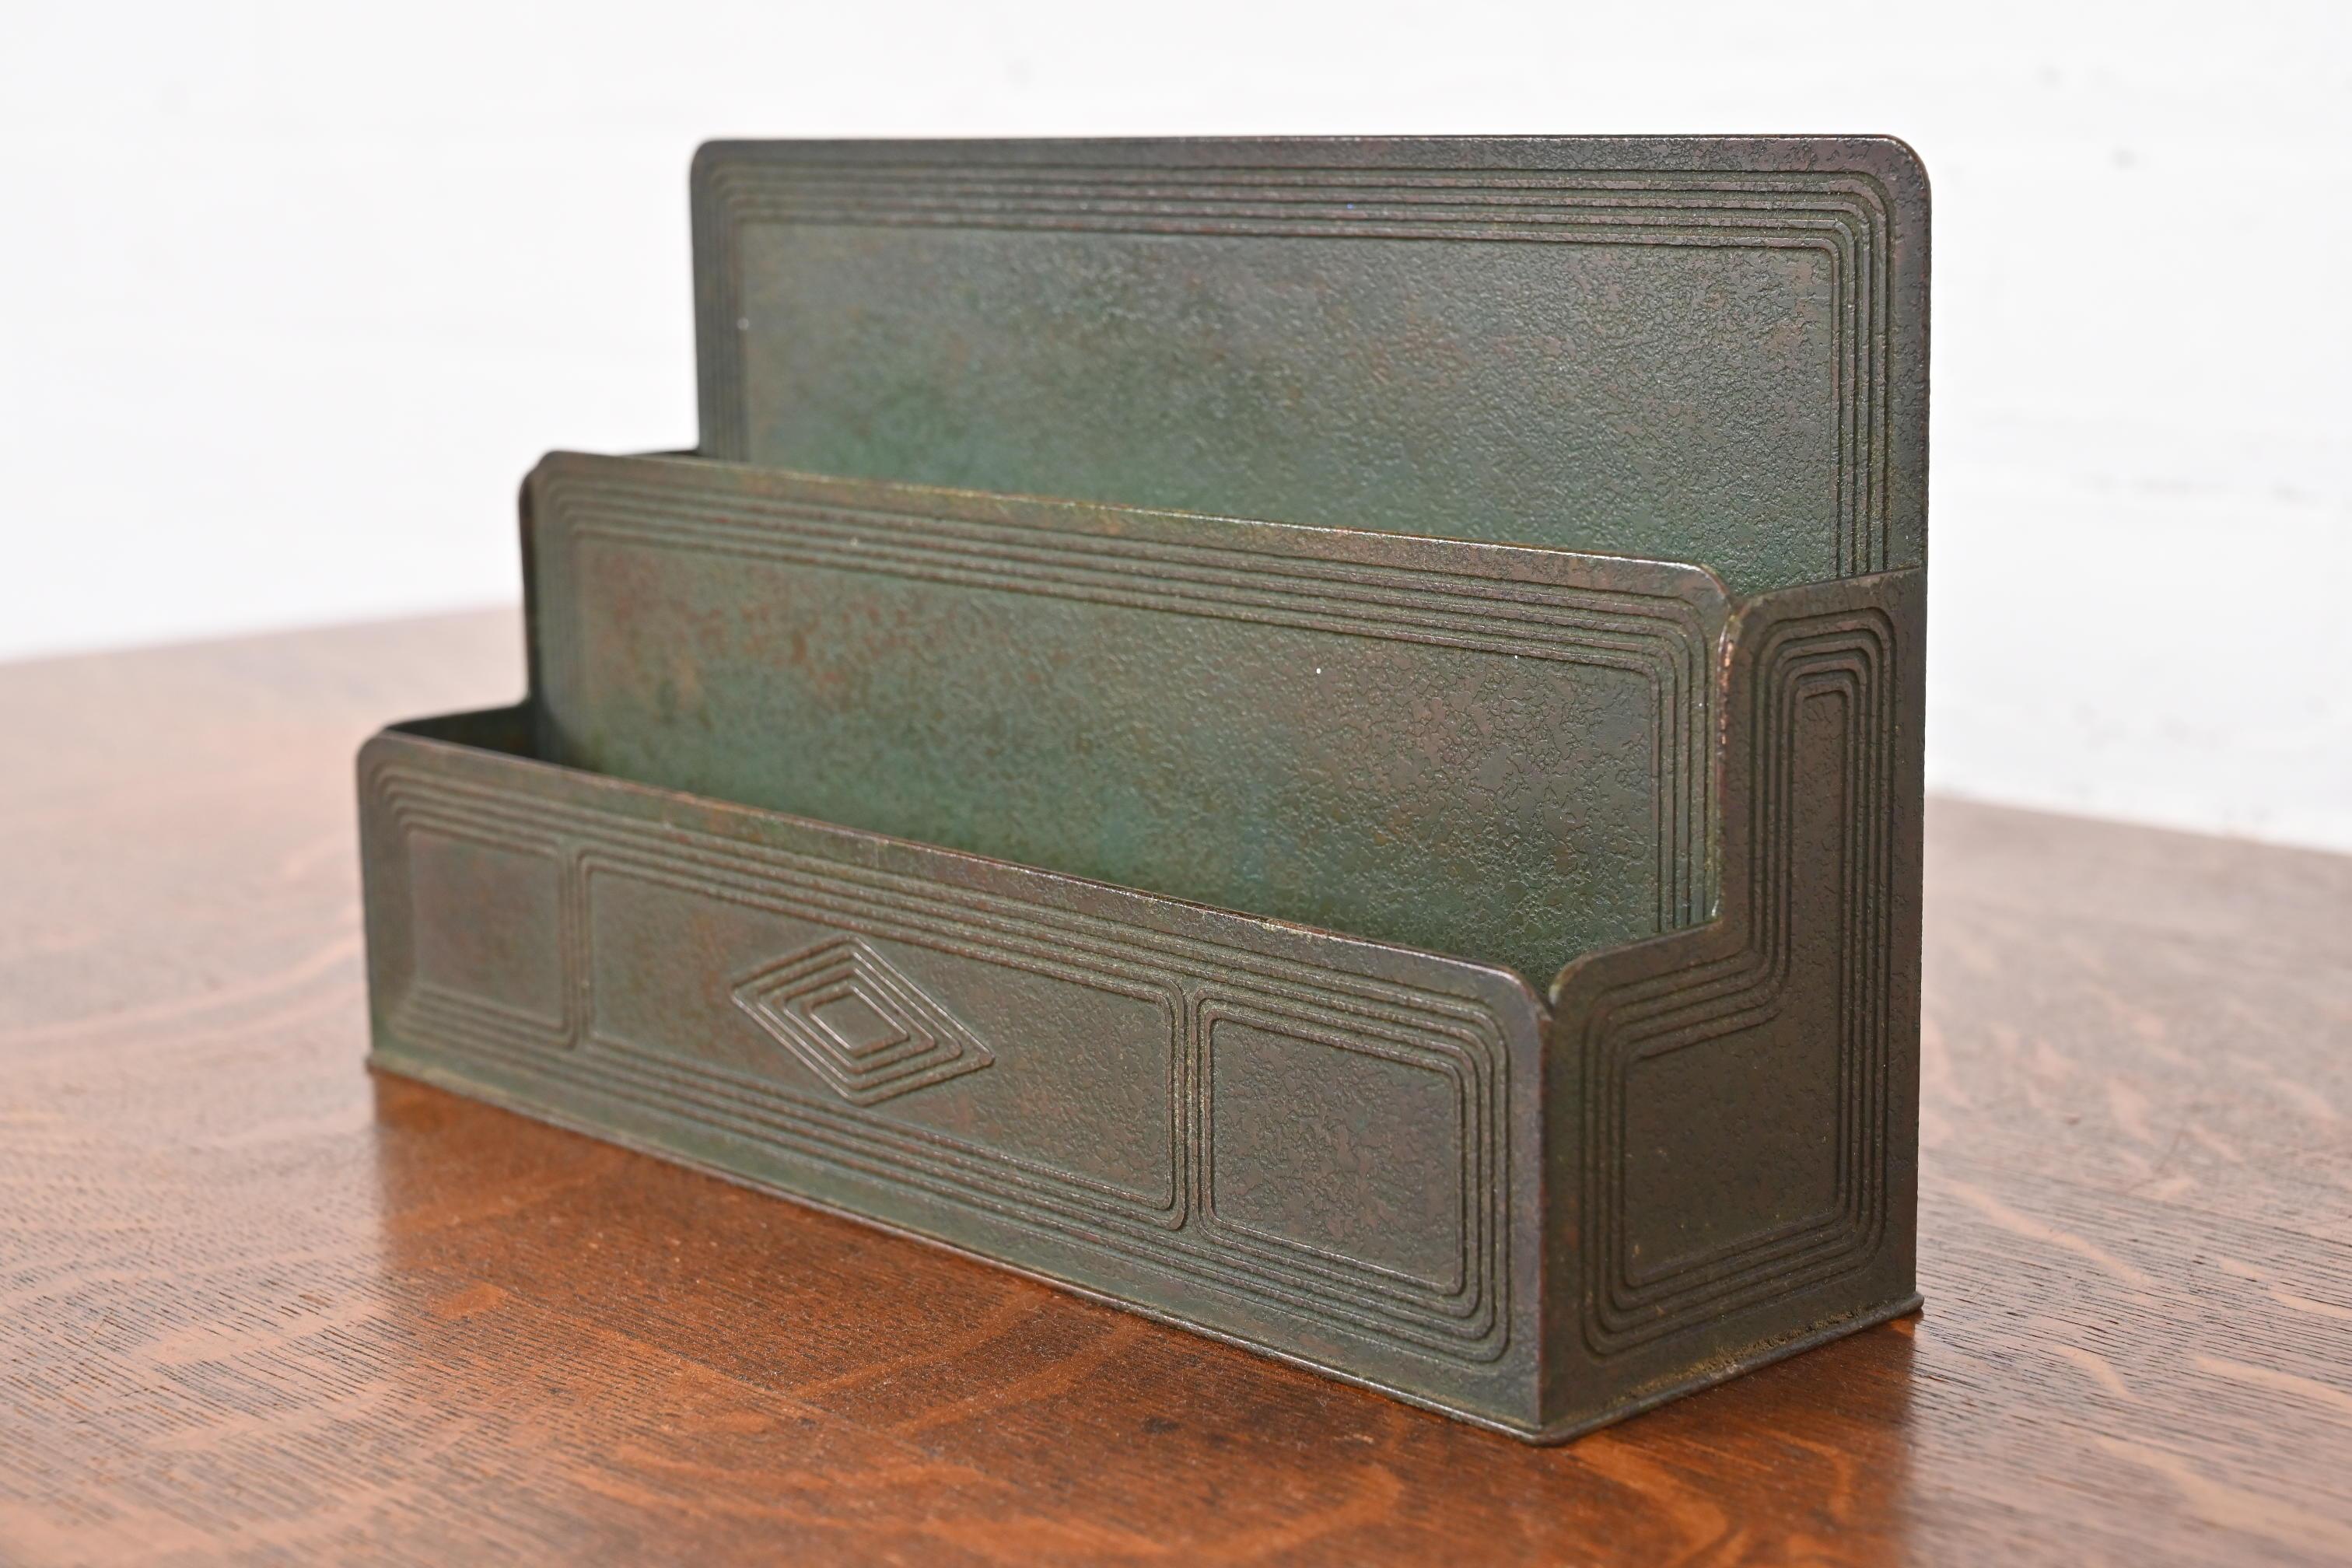 Eine wunderschöne antike Bronze Graduate Muster Schreibtisch Briefständer oder Brief Sortierer mit Grünspan Patina

Von Tiffany Studios (signiert auf der Unterseite)

New York, USA, Anfang des 20. Jahrhunderts

Maße: 9,38 